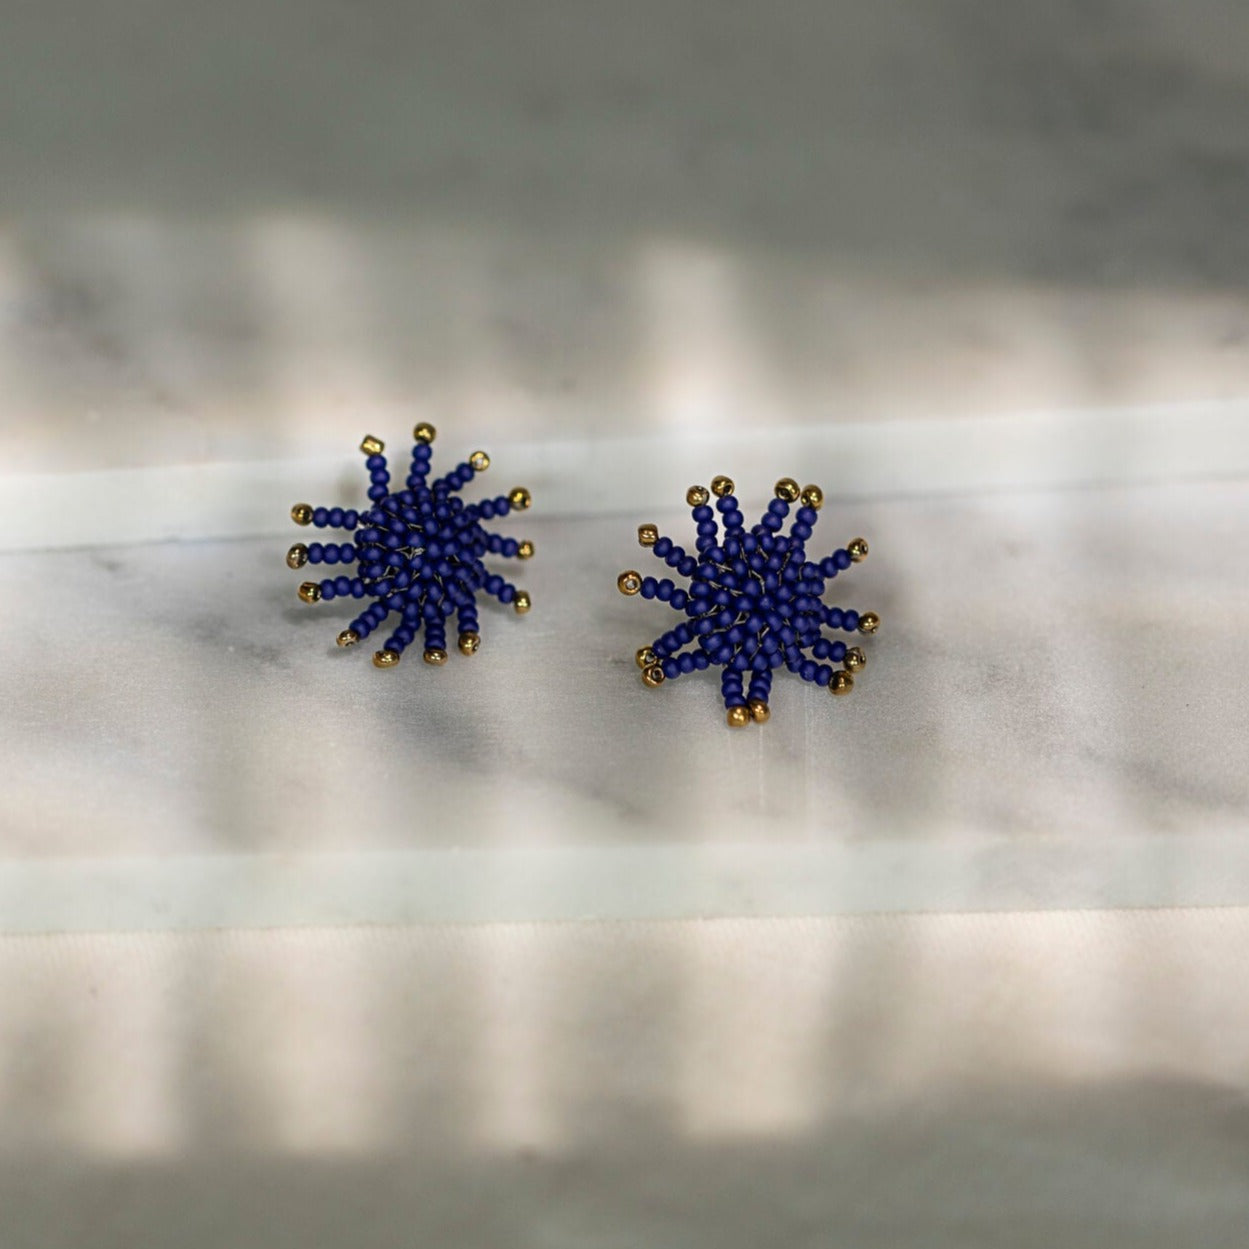 Haiti Design Co - Sunburst Navy Blue Glass Bead Earrings